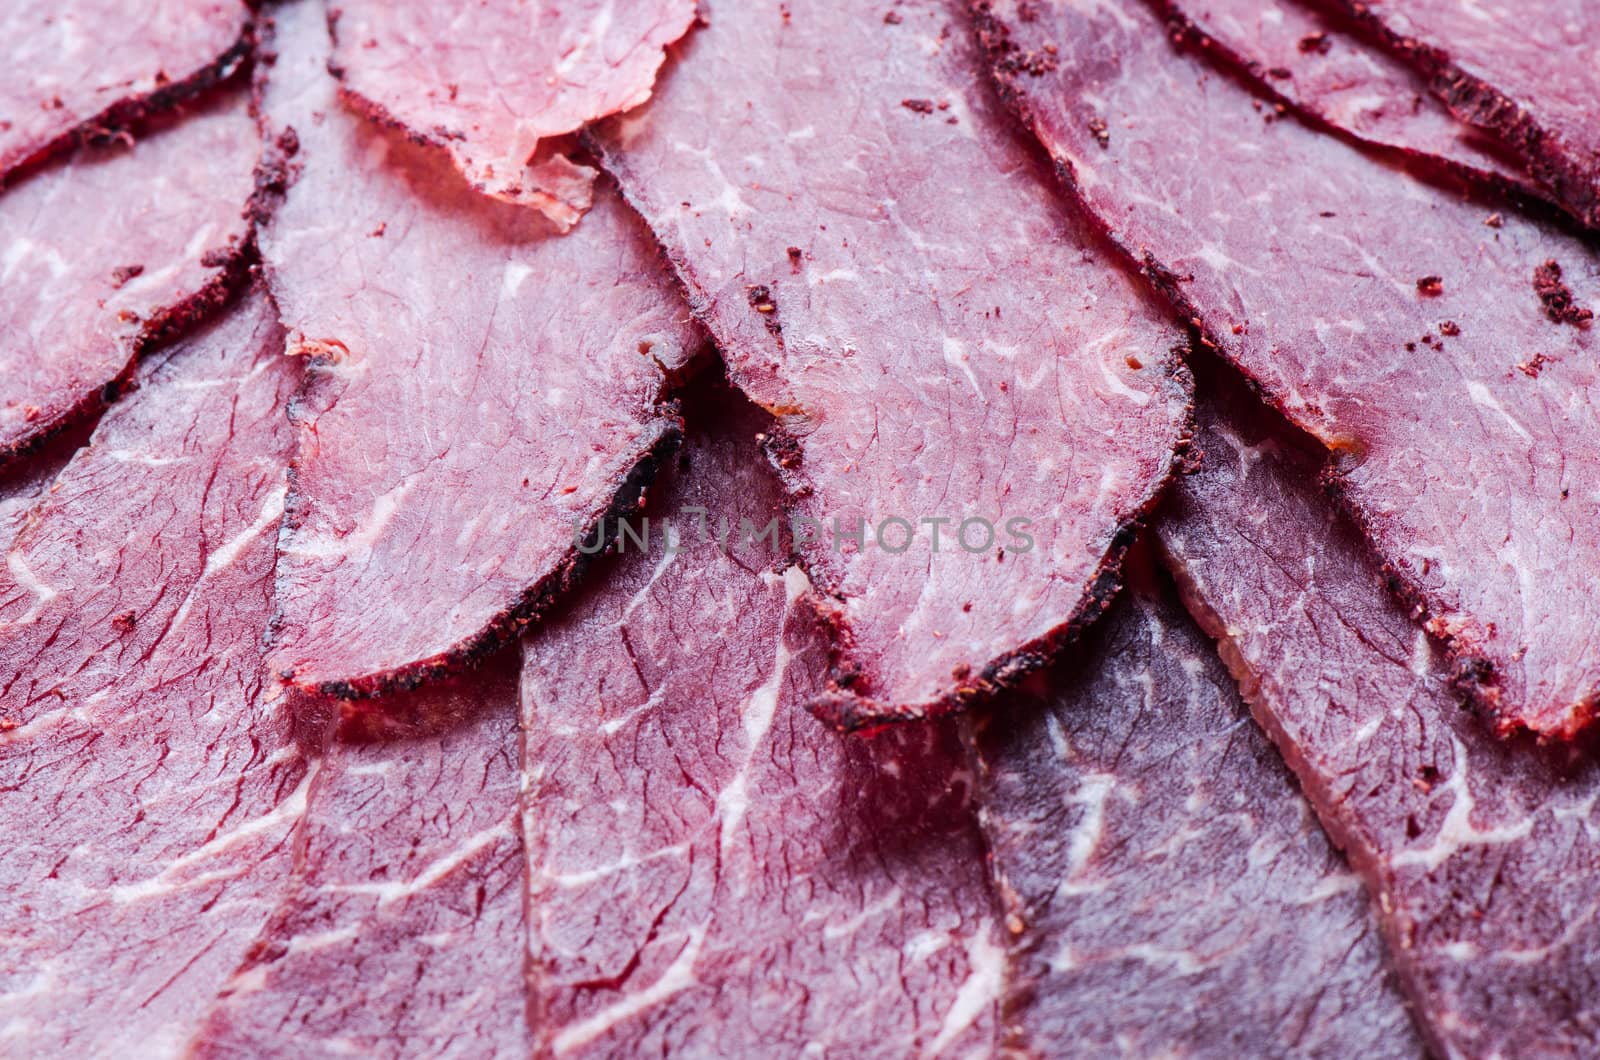 Close up beef by Nanisimova